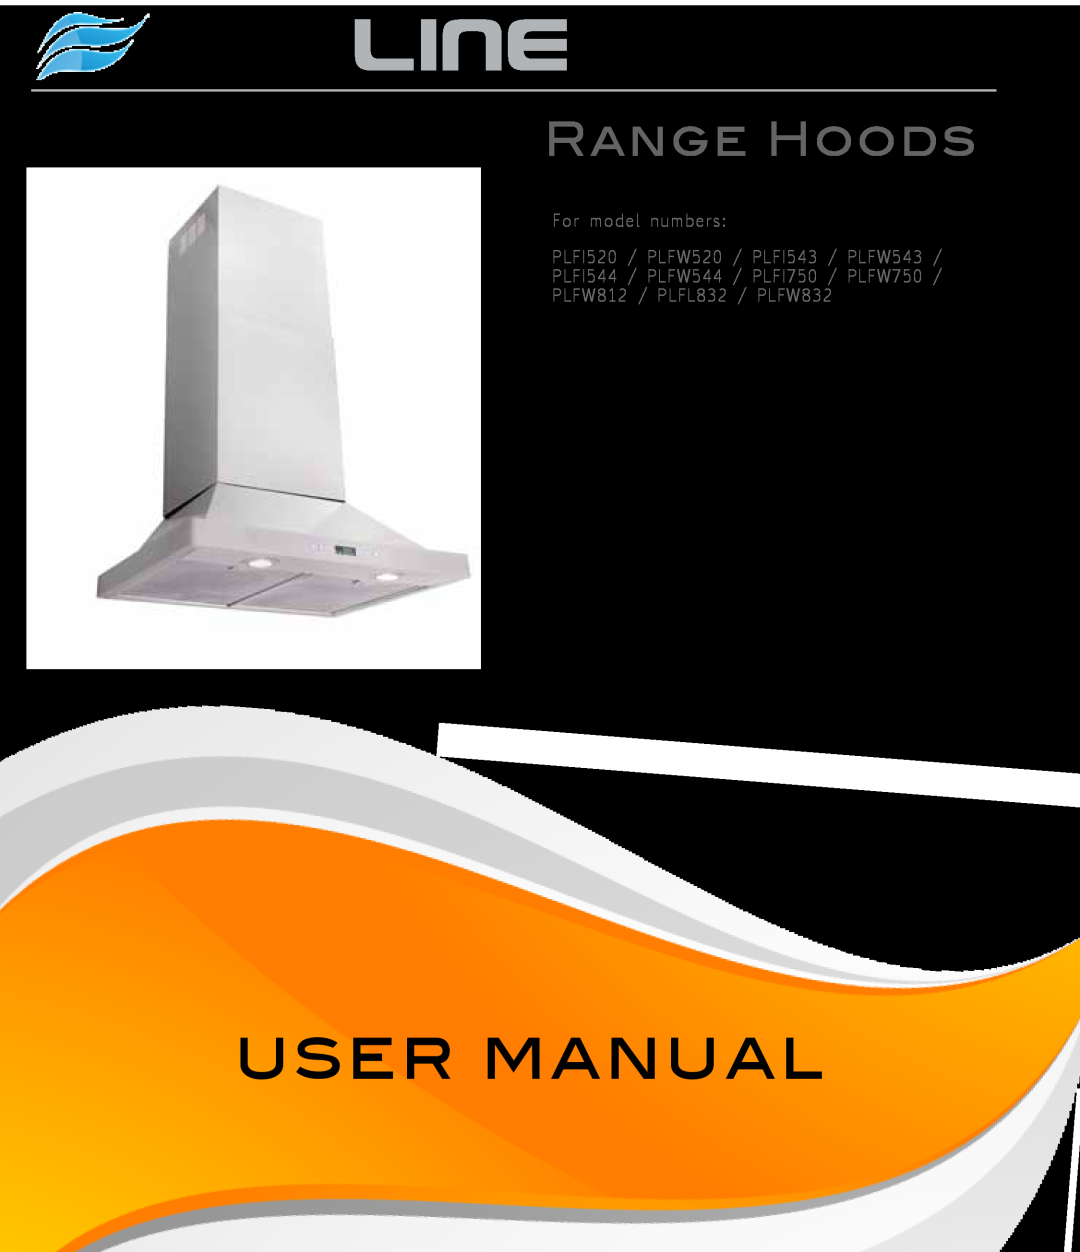 Proline PLFW812 user manual Proline, User Manual, Range Hoods, For model numbers PLFI520 / PLFW520 / PLFI543 / PLFW543 